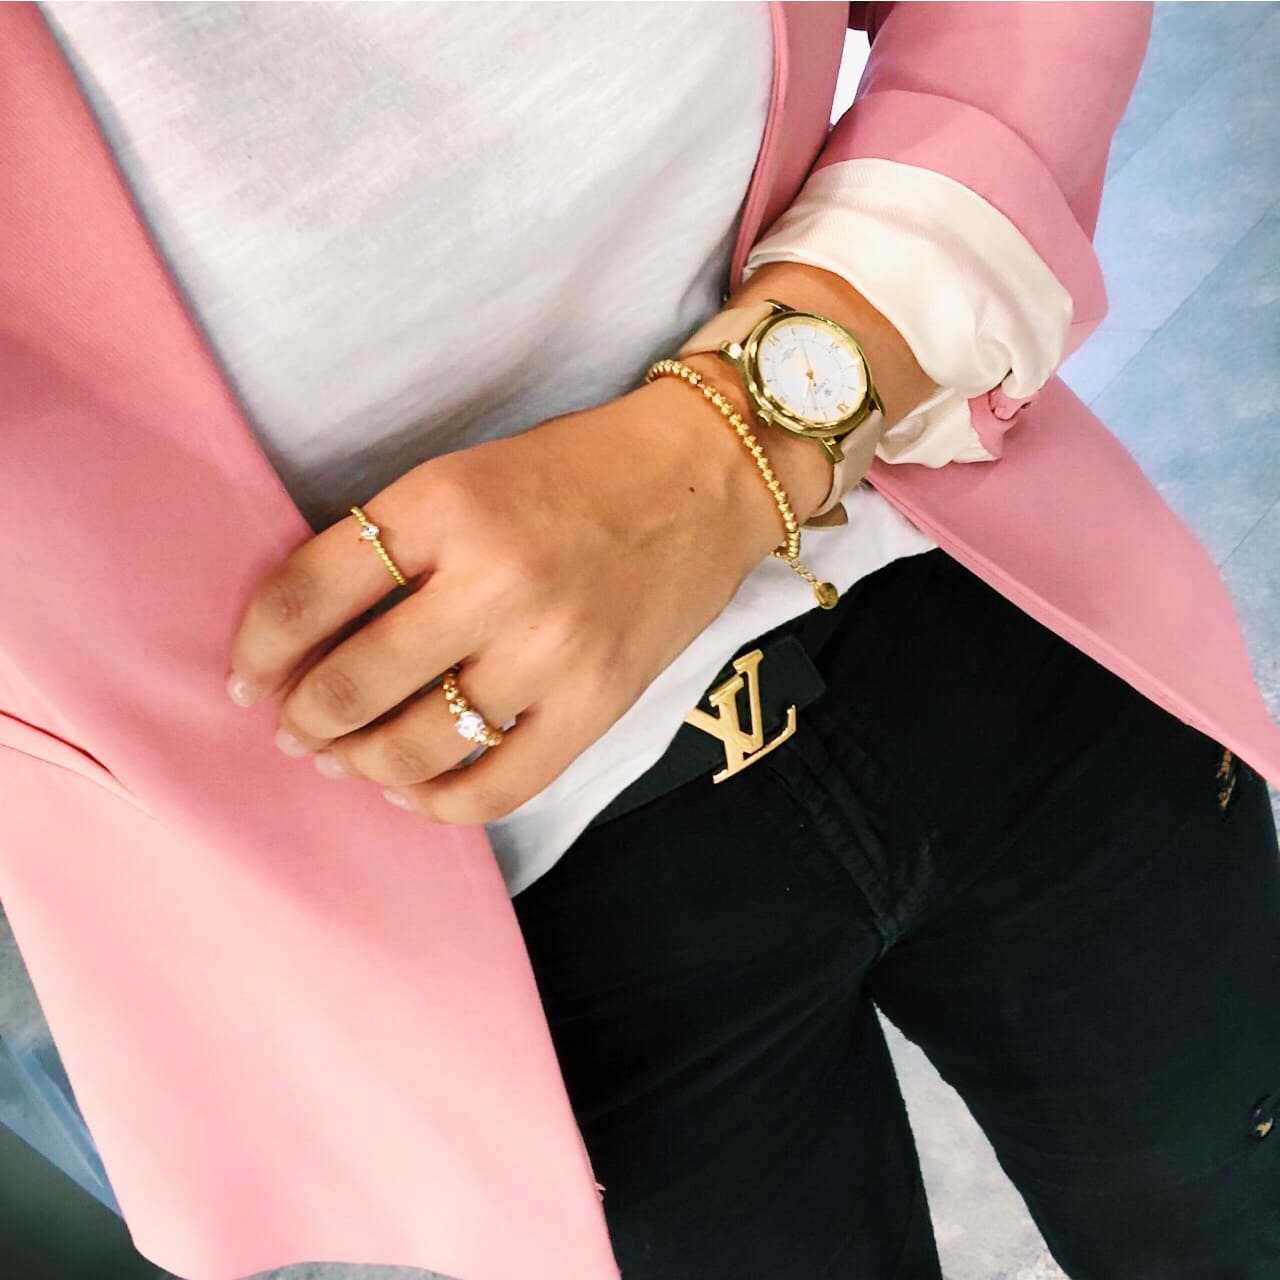 Goldene Damenuhr zum modernen Businesslook mit Rosa Blazer, LV Gürtel und Goldenem Schmuck kombiniert wird zu einem Meeting in Bern getragen